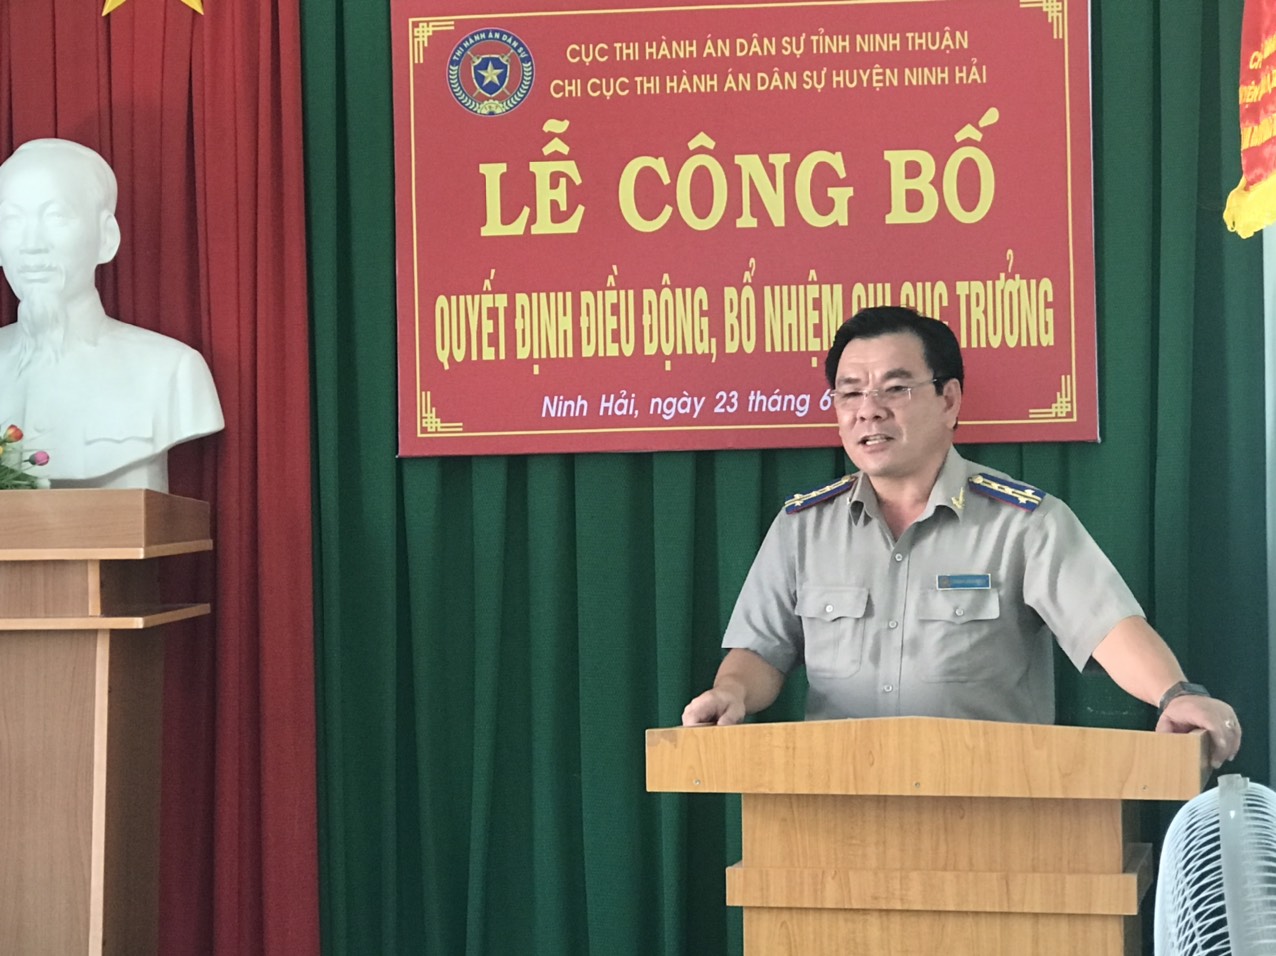 Cục Thi hành án dân sự tỉnh Ninh Thuận tổ chức công bố, trao các quyết định của Tổng cục trưởng Tổng cục Thi hành án dân sự về việc điều động, bổ nhiệm công chức giữ chức vụ lãnh đạo